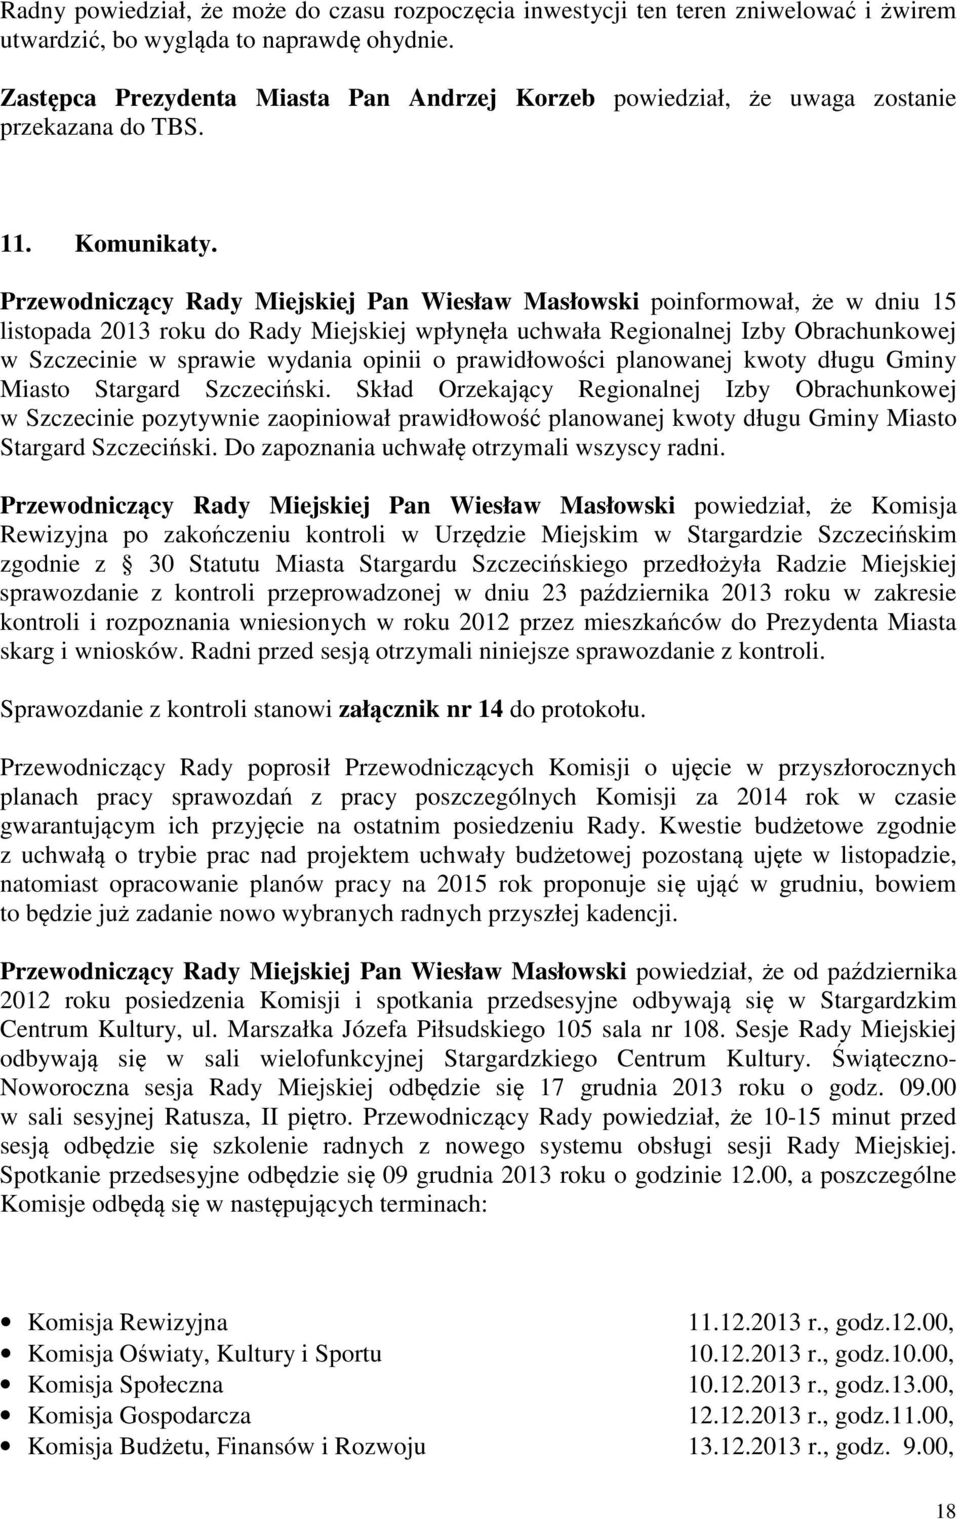 Przewodniczcy Rady Miejskiej Pan Wiesław Masłowski poinformował, e w dniu 15 listopada 2013 roku do Rady Miejskiej wpłynła uchwała Regionalnej Izby Obrachunkowej w Szczecinie w sprawie wydania opinii